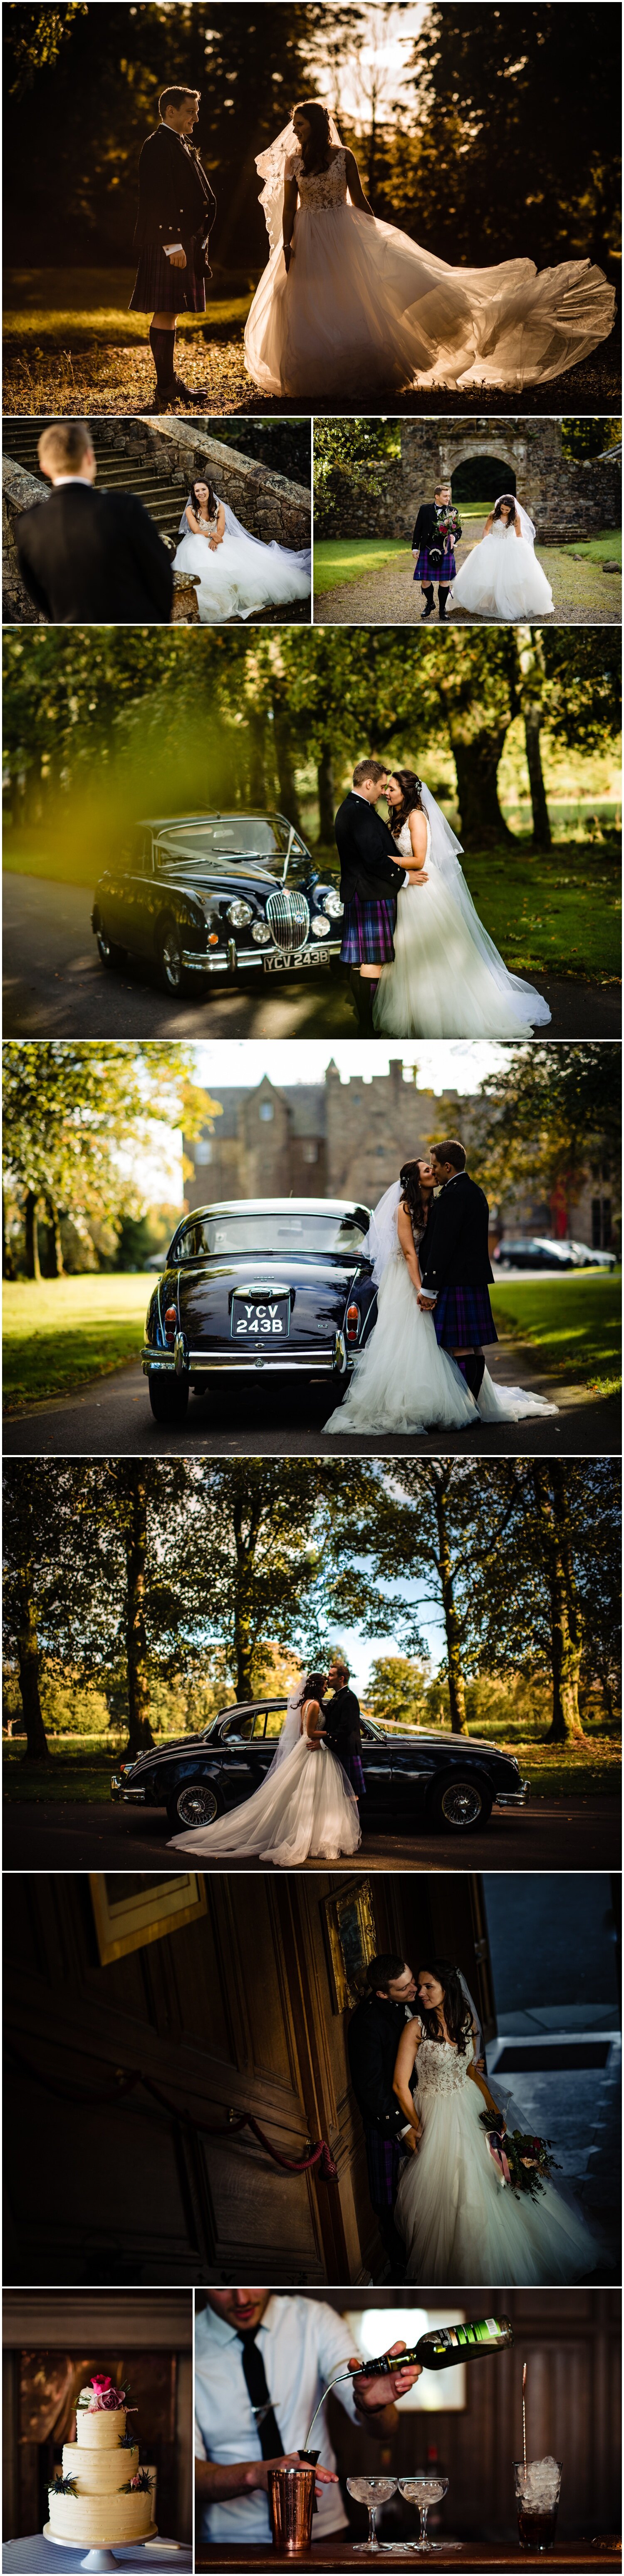 rowallan-castle-wedding-photographer-edinburgh-wedding-photographer-ricky-baillie-photography_0005.jpg